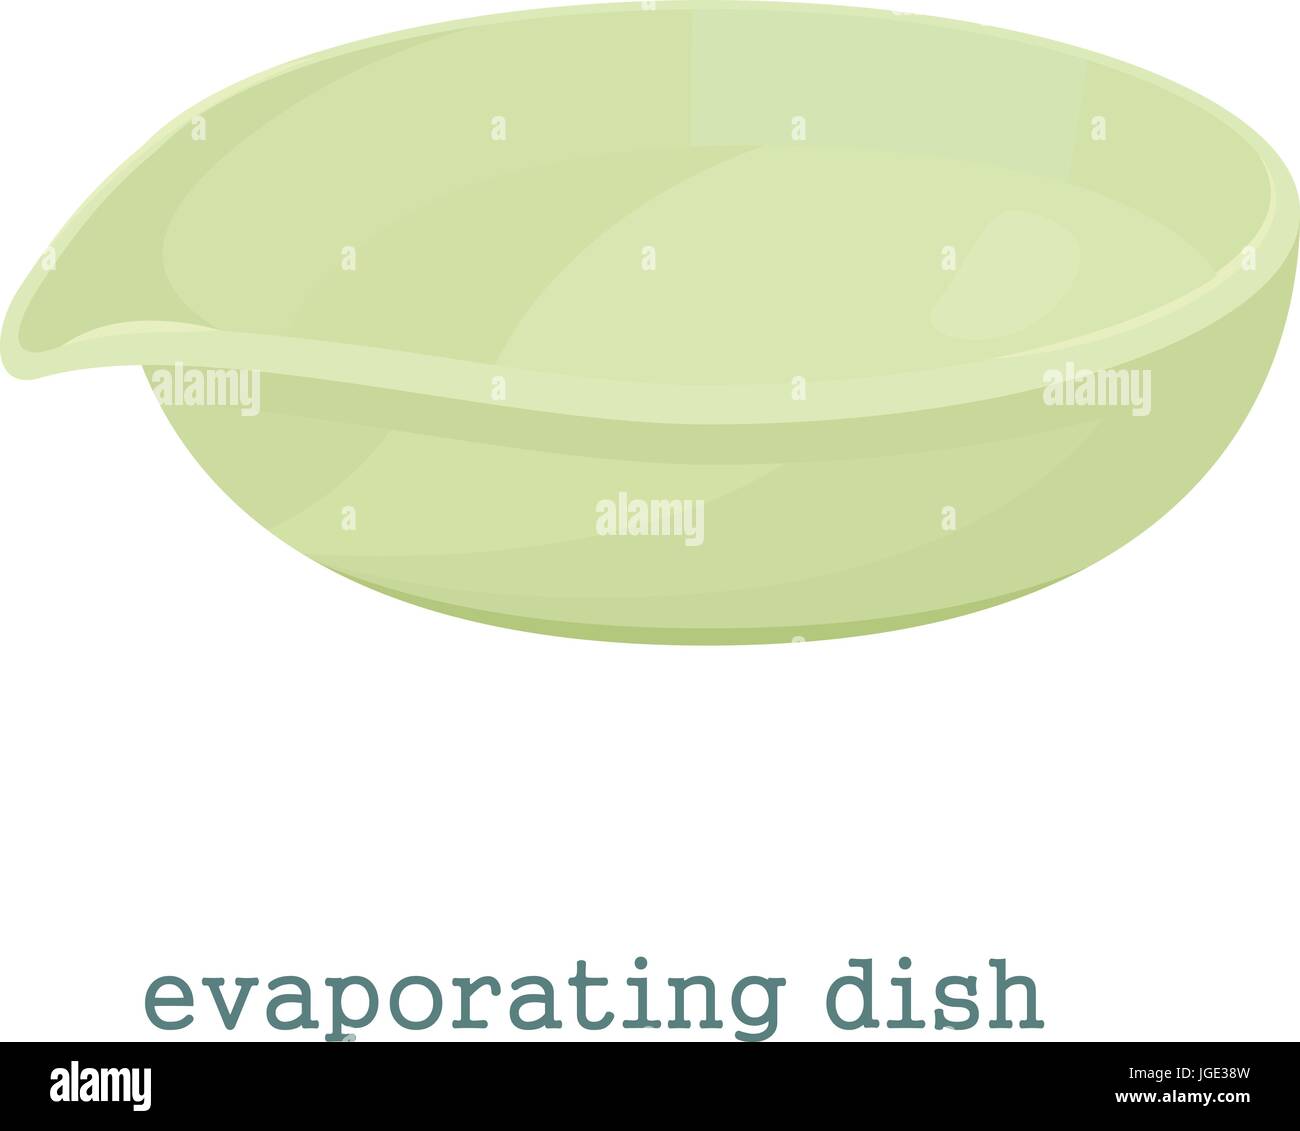 evaporating dish clipart black